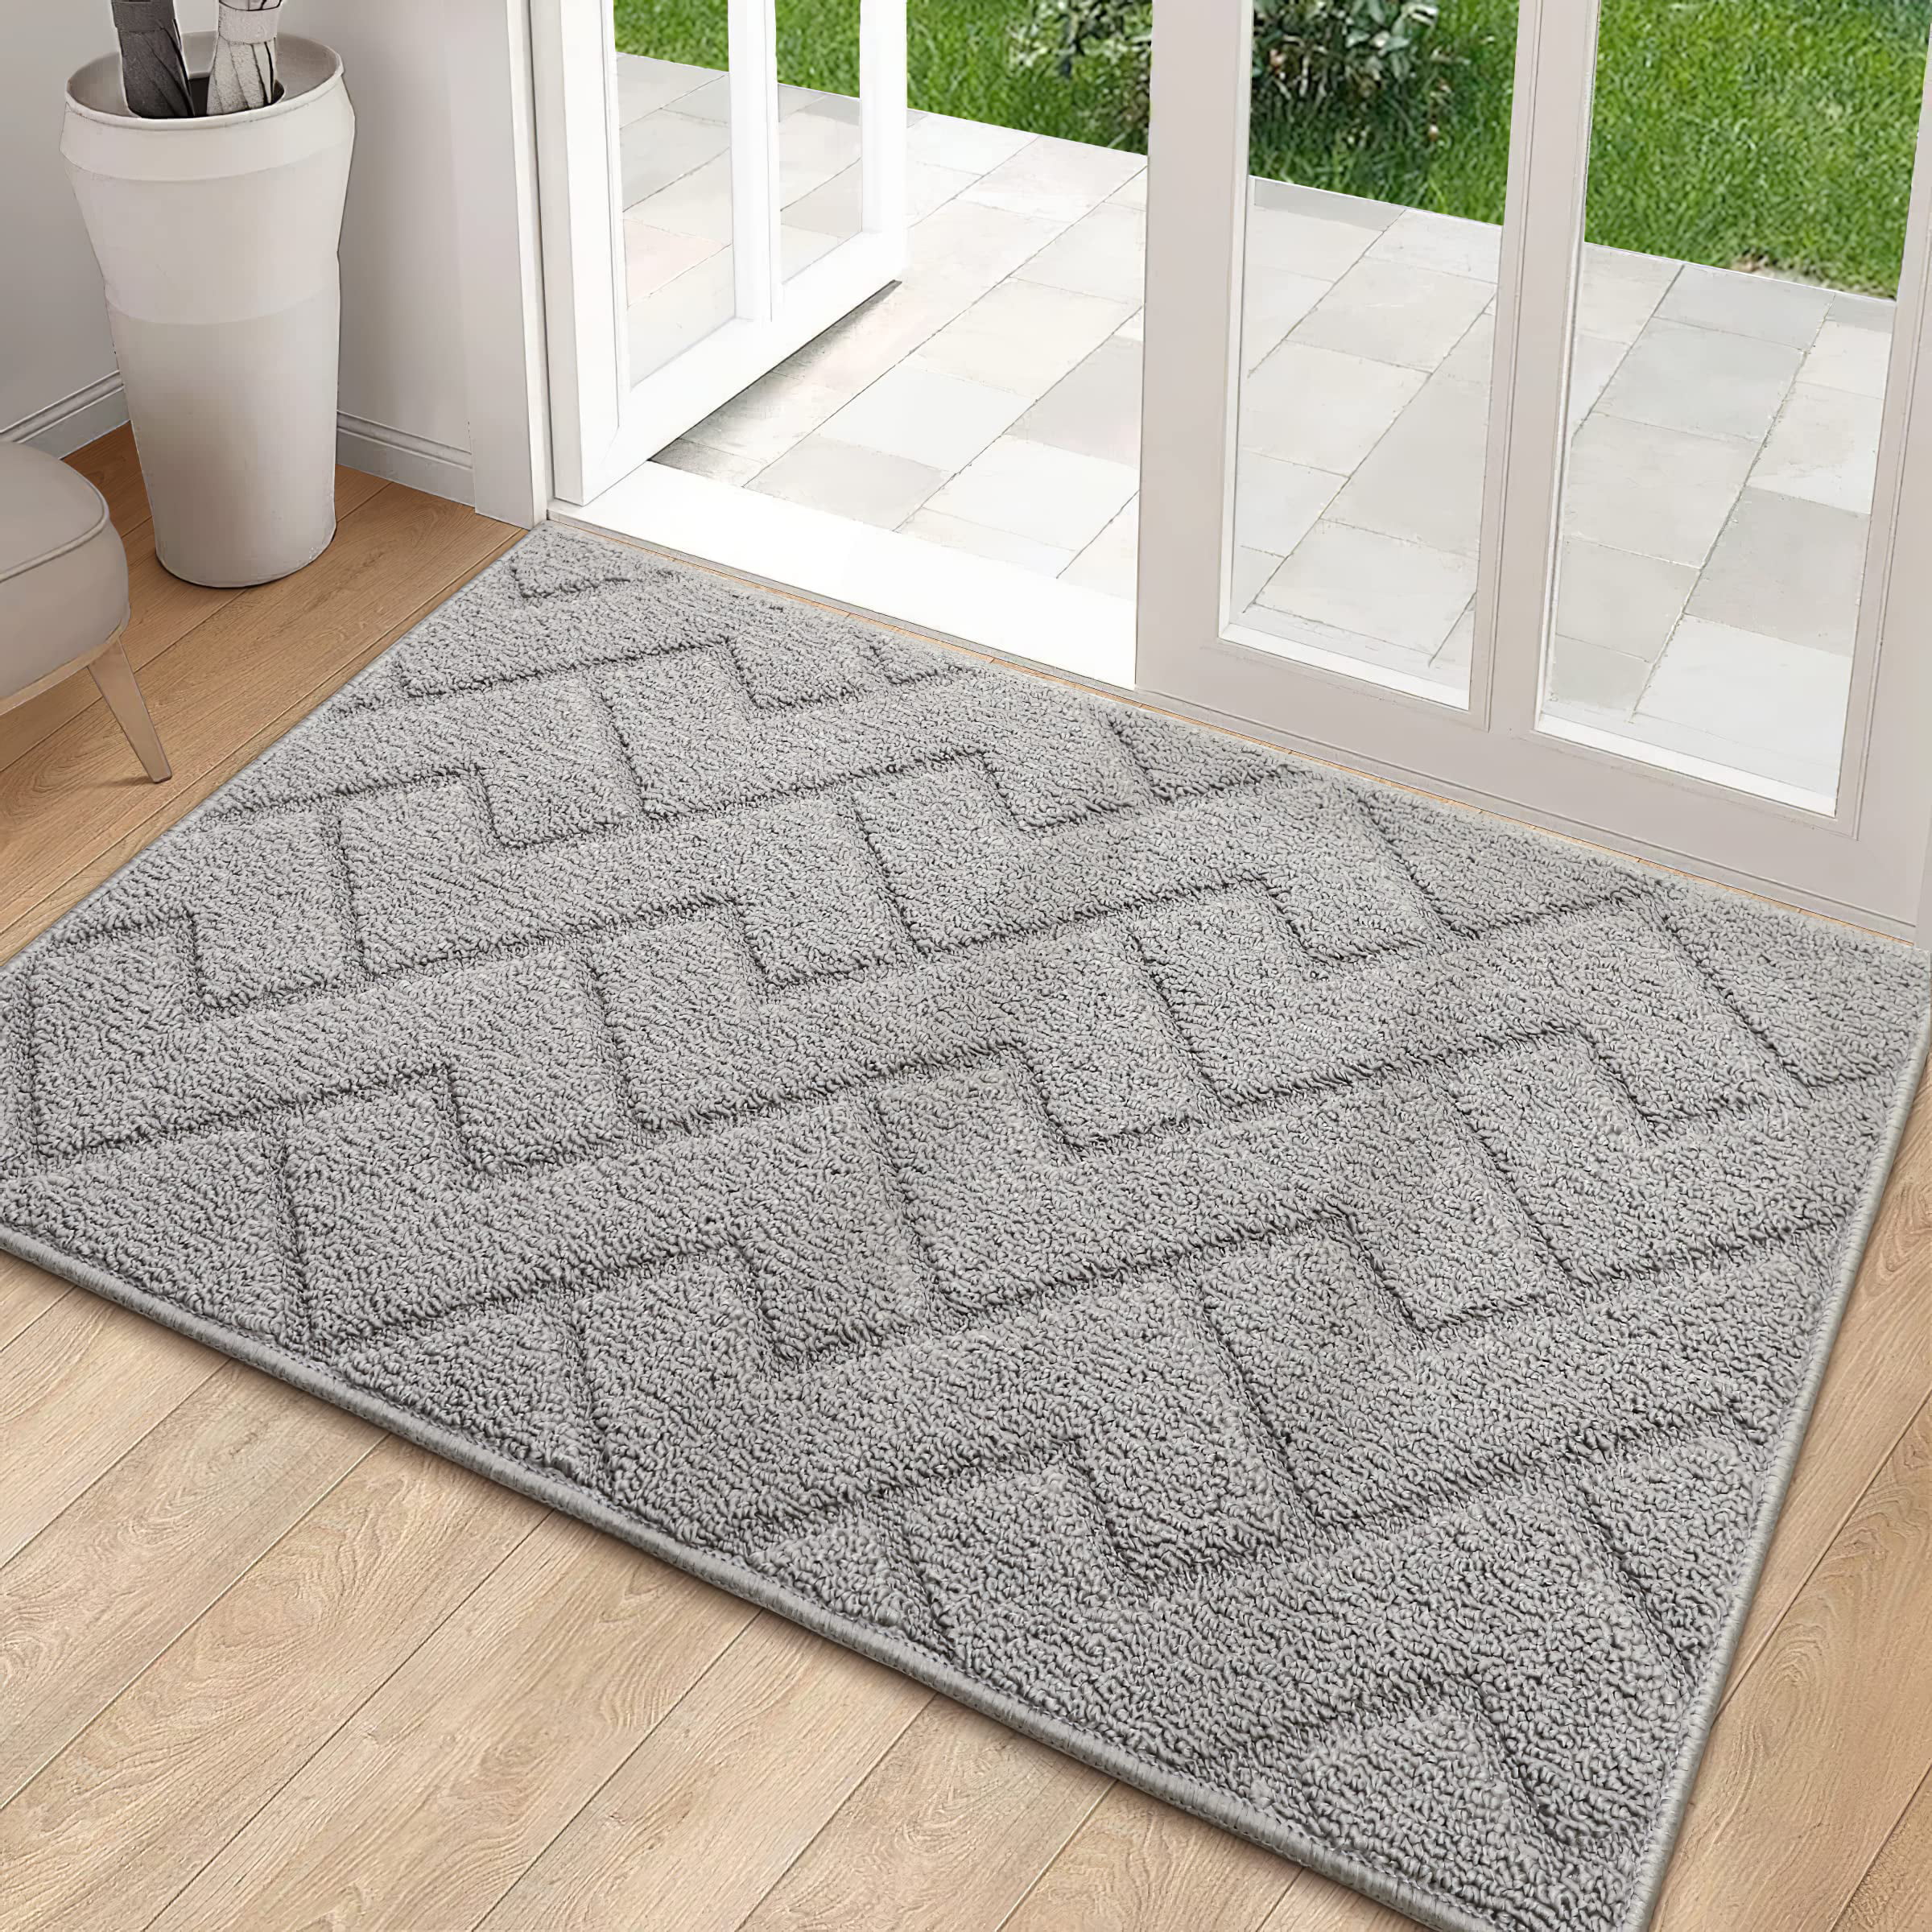 hicorfe Indoor Doormat,Front Back Door Mat Rubber Backing 20”x31.5”, Black